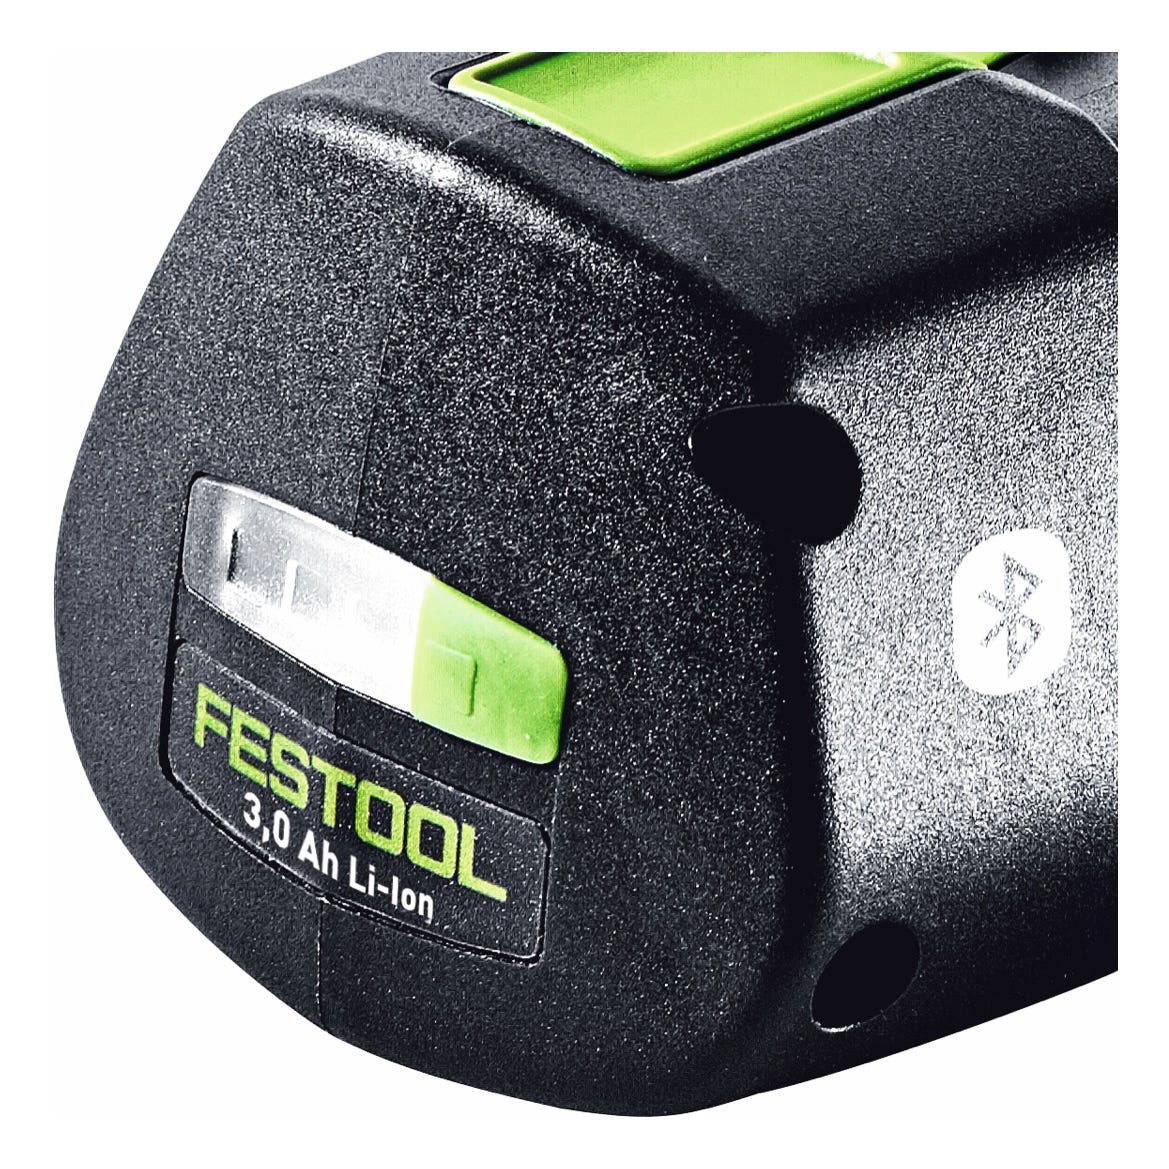 Batterie Festool 3x BP 18 Li 3,0 Ergo I batterie 18 V 3,0 Ah / 3000 mAh Li-Ion ( 3x 577704 ) avec indicateur de niveau de 0